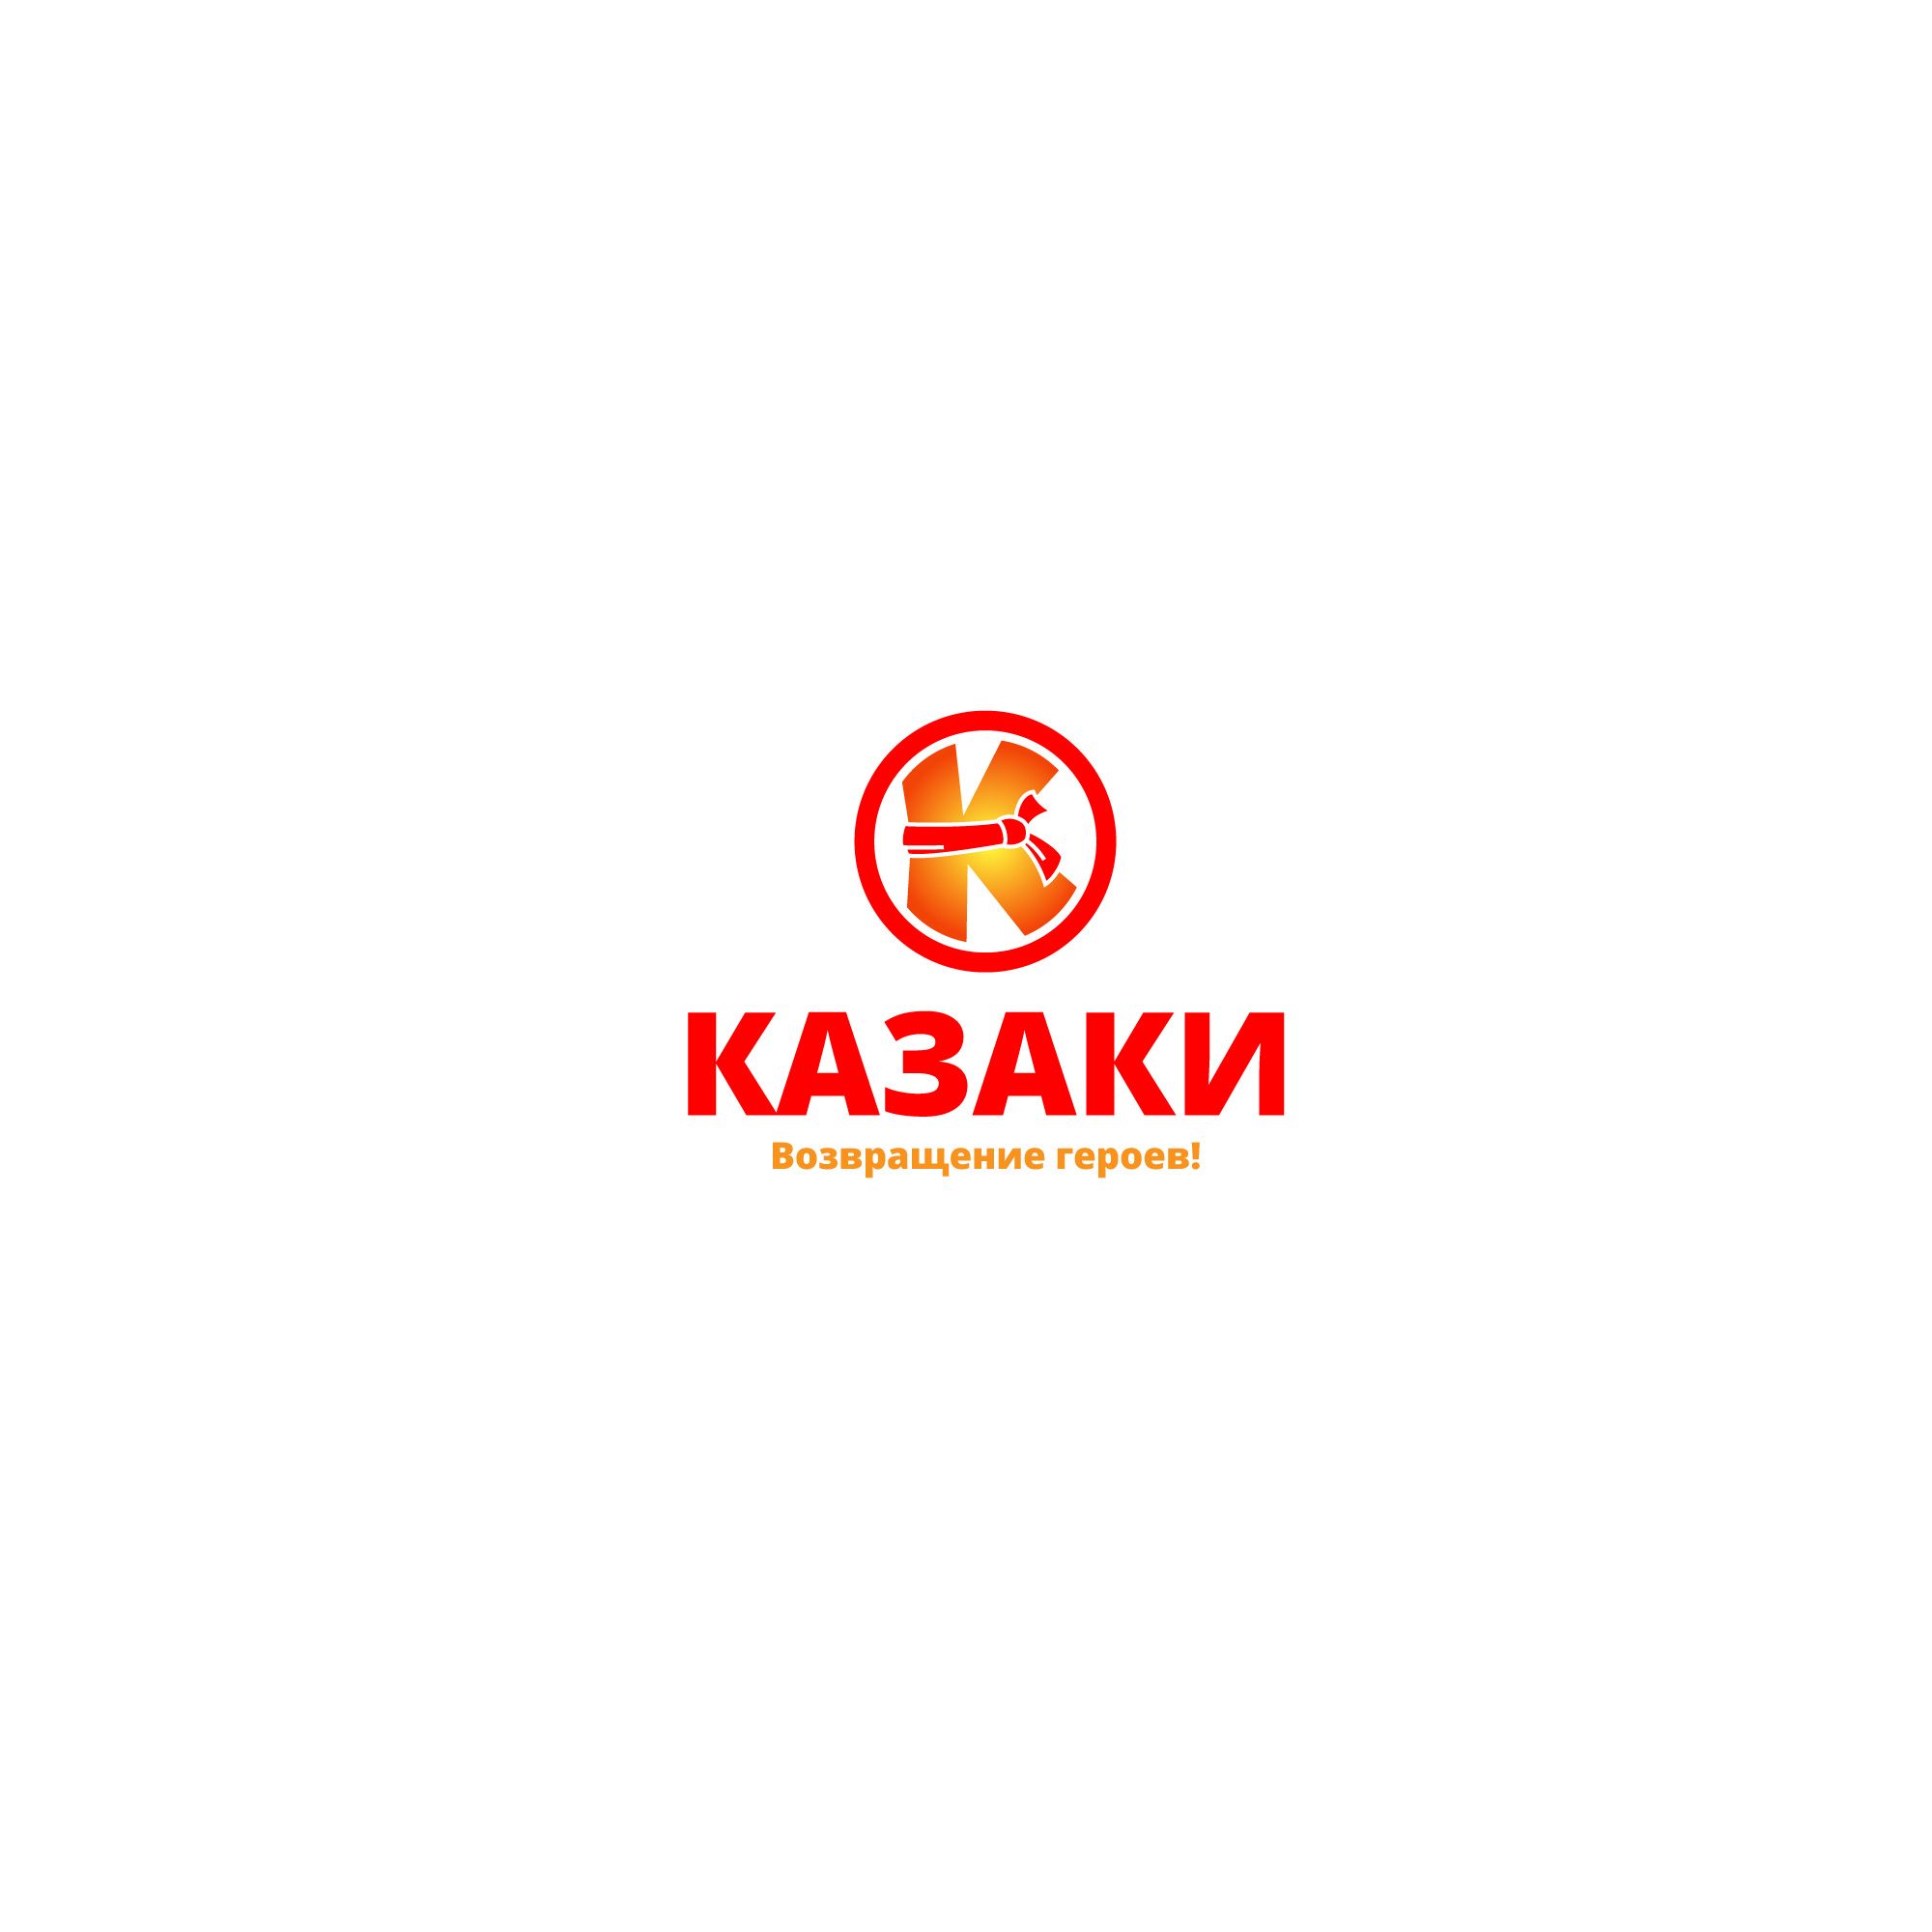 Логотип для КОЗАКИ/КАЗАКИ/KOZAKY - дизайнер designer12345